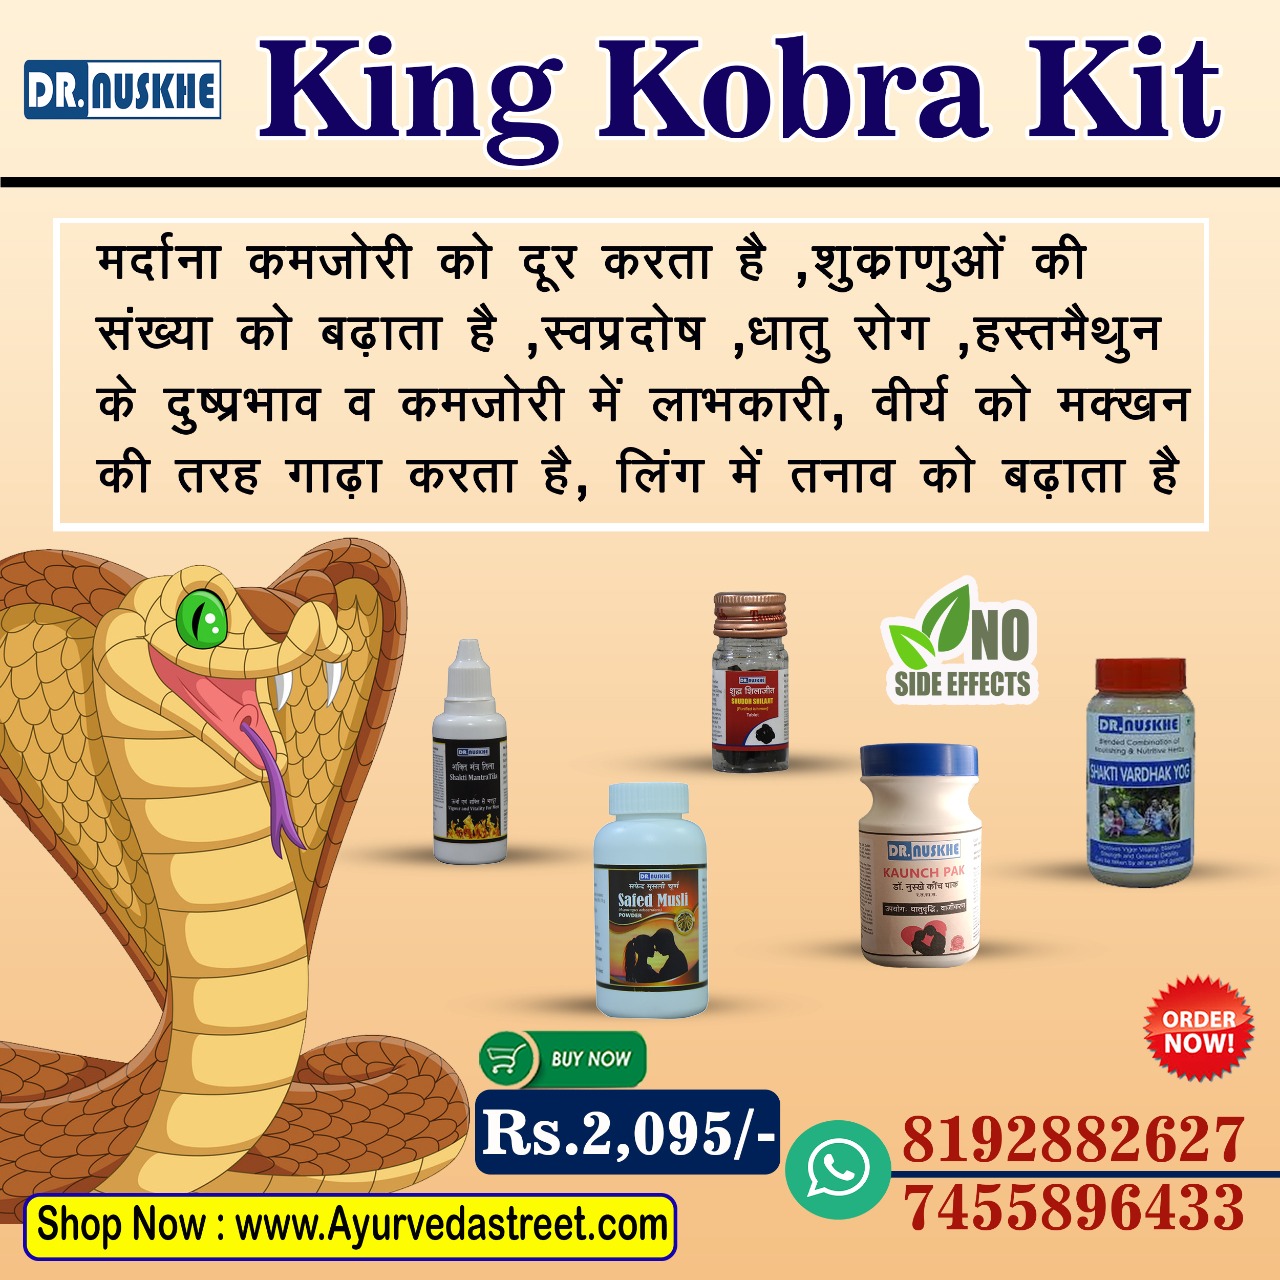 1597057385-king-kobra-kit.jpg